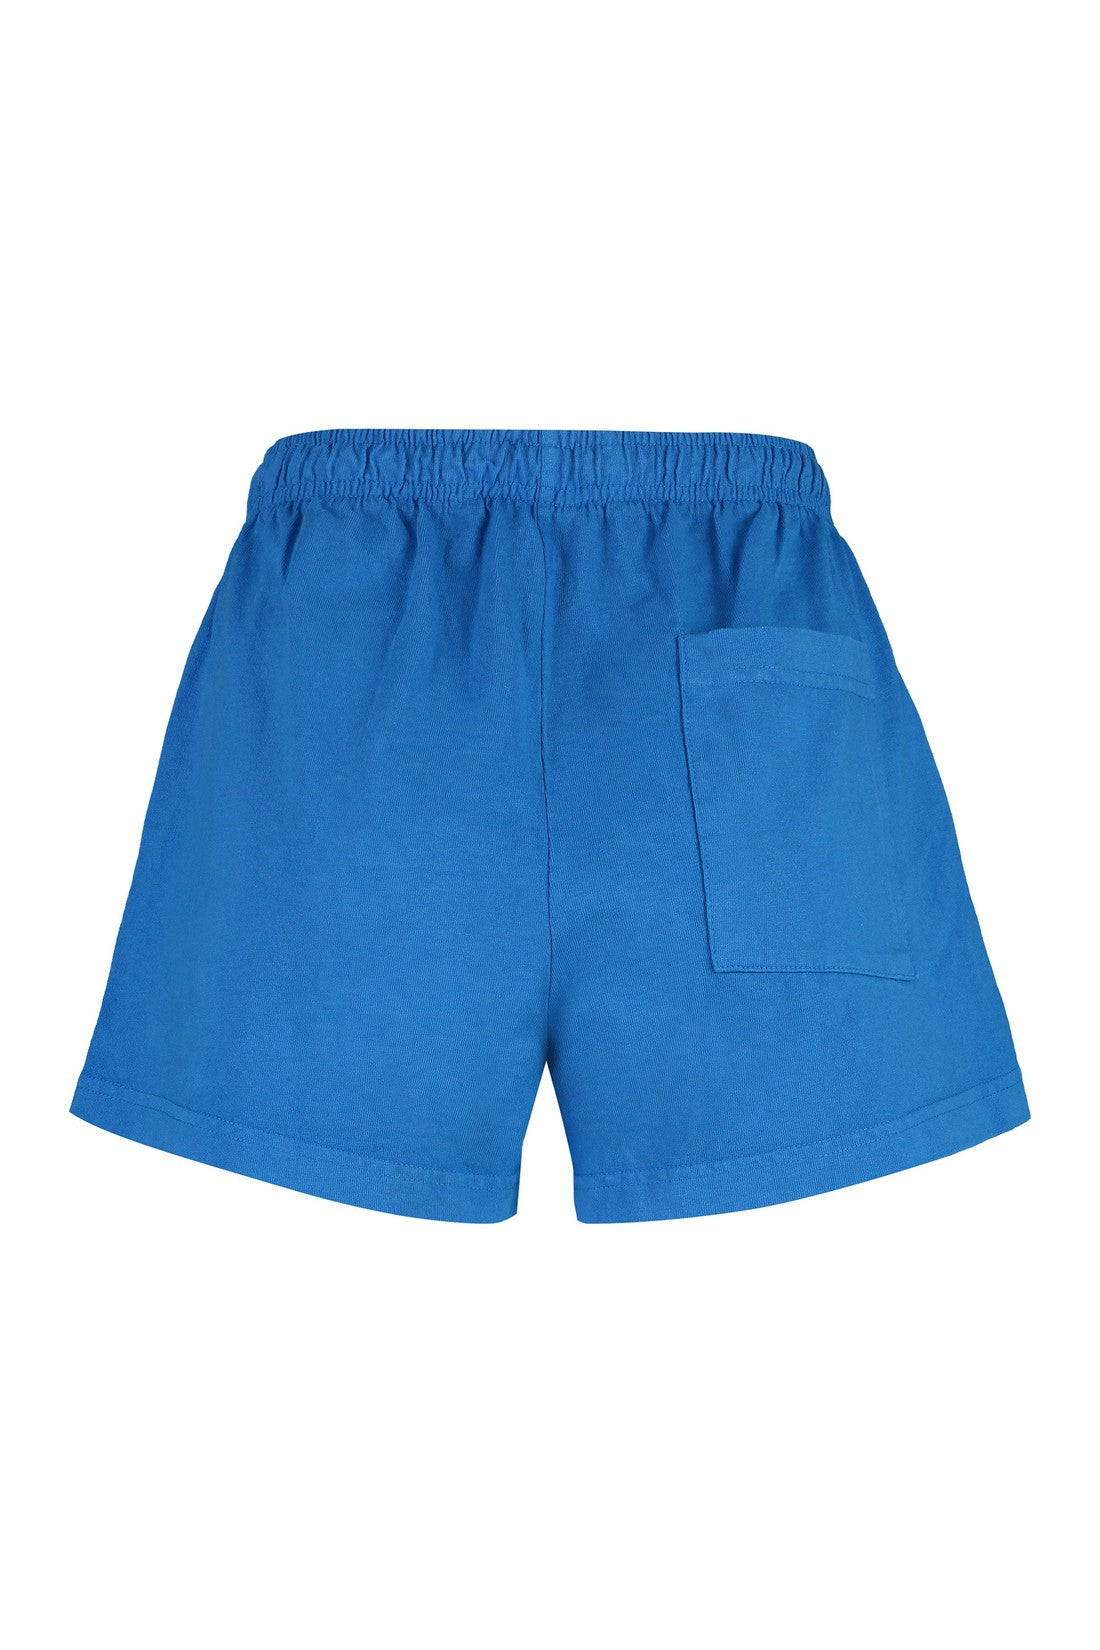 Sporty & Rich-OUTLET-SALE-Cotton shorts-ARCHIVIST